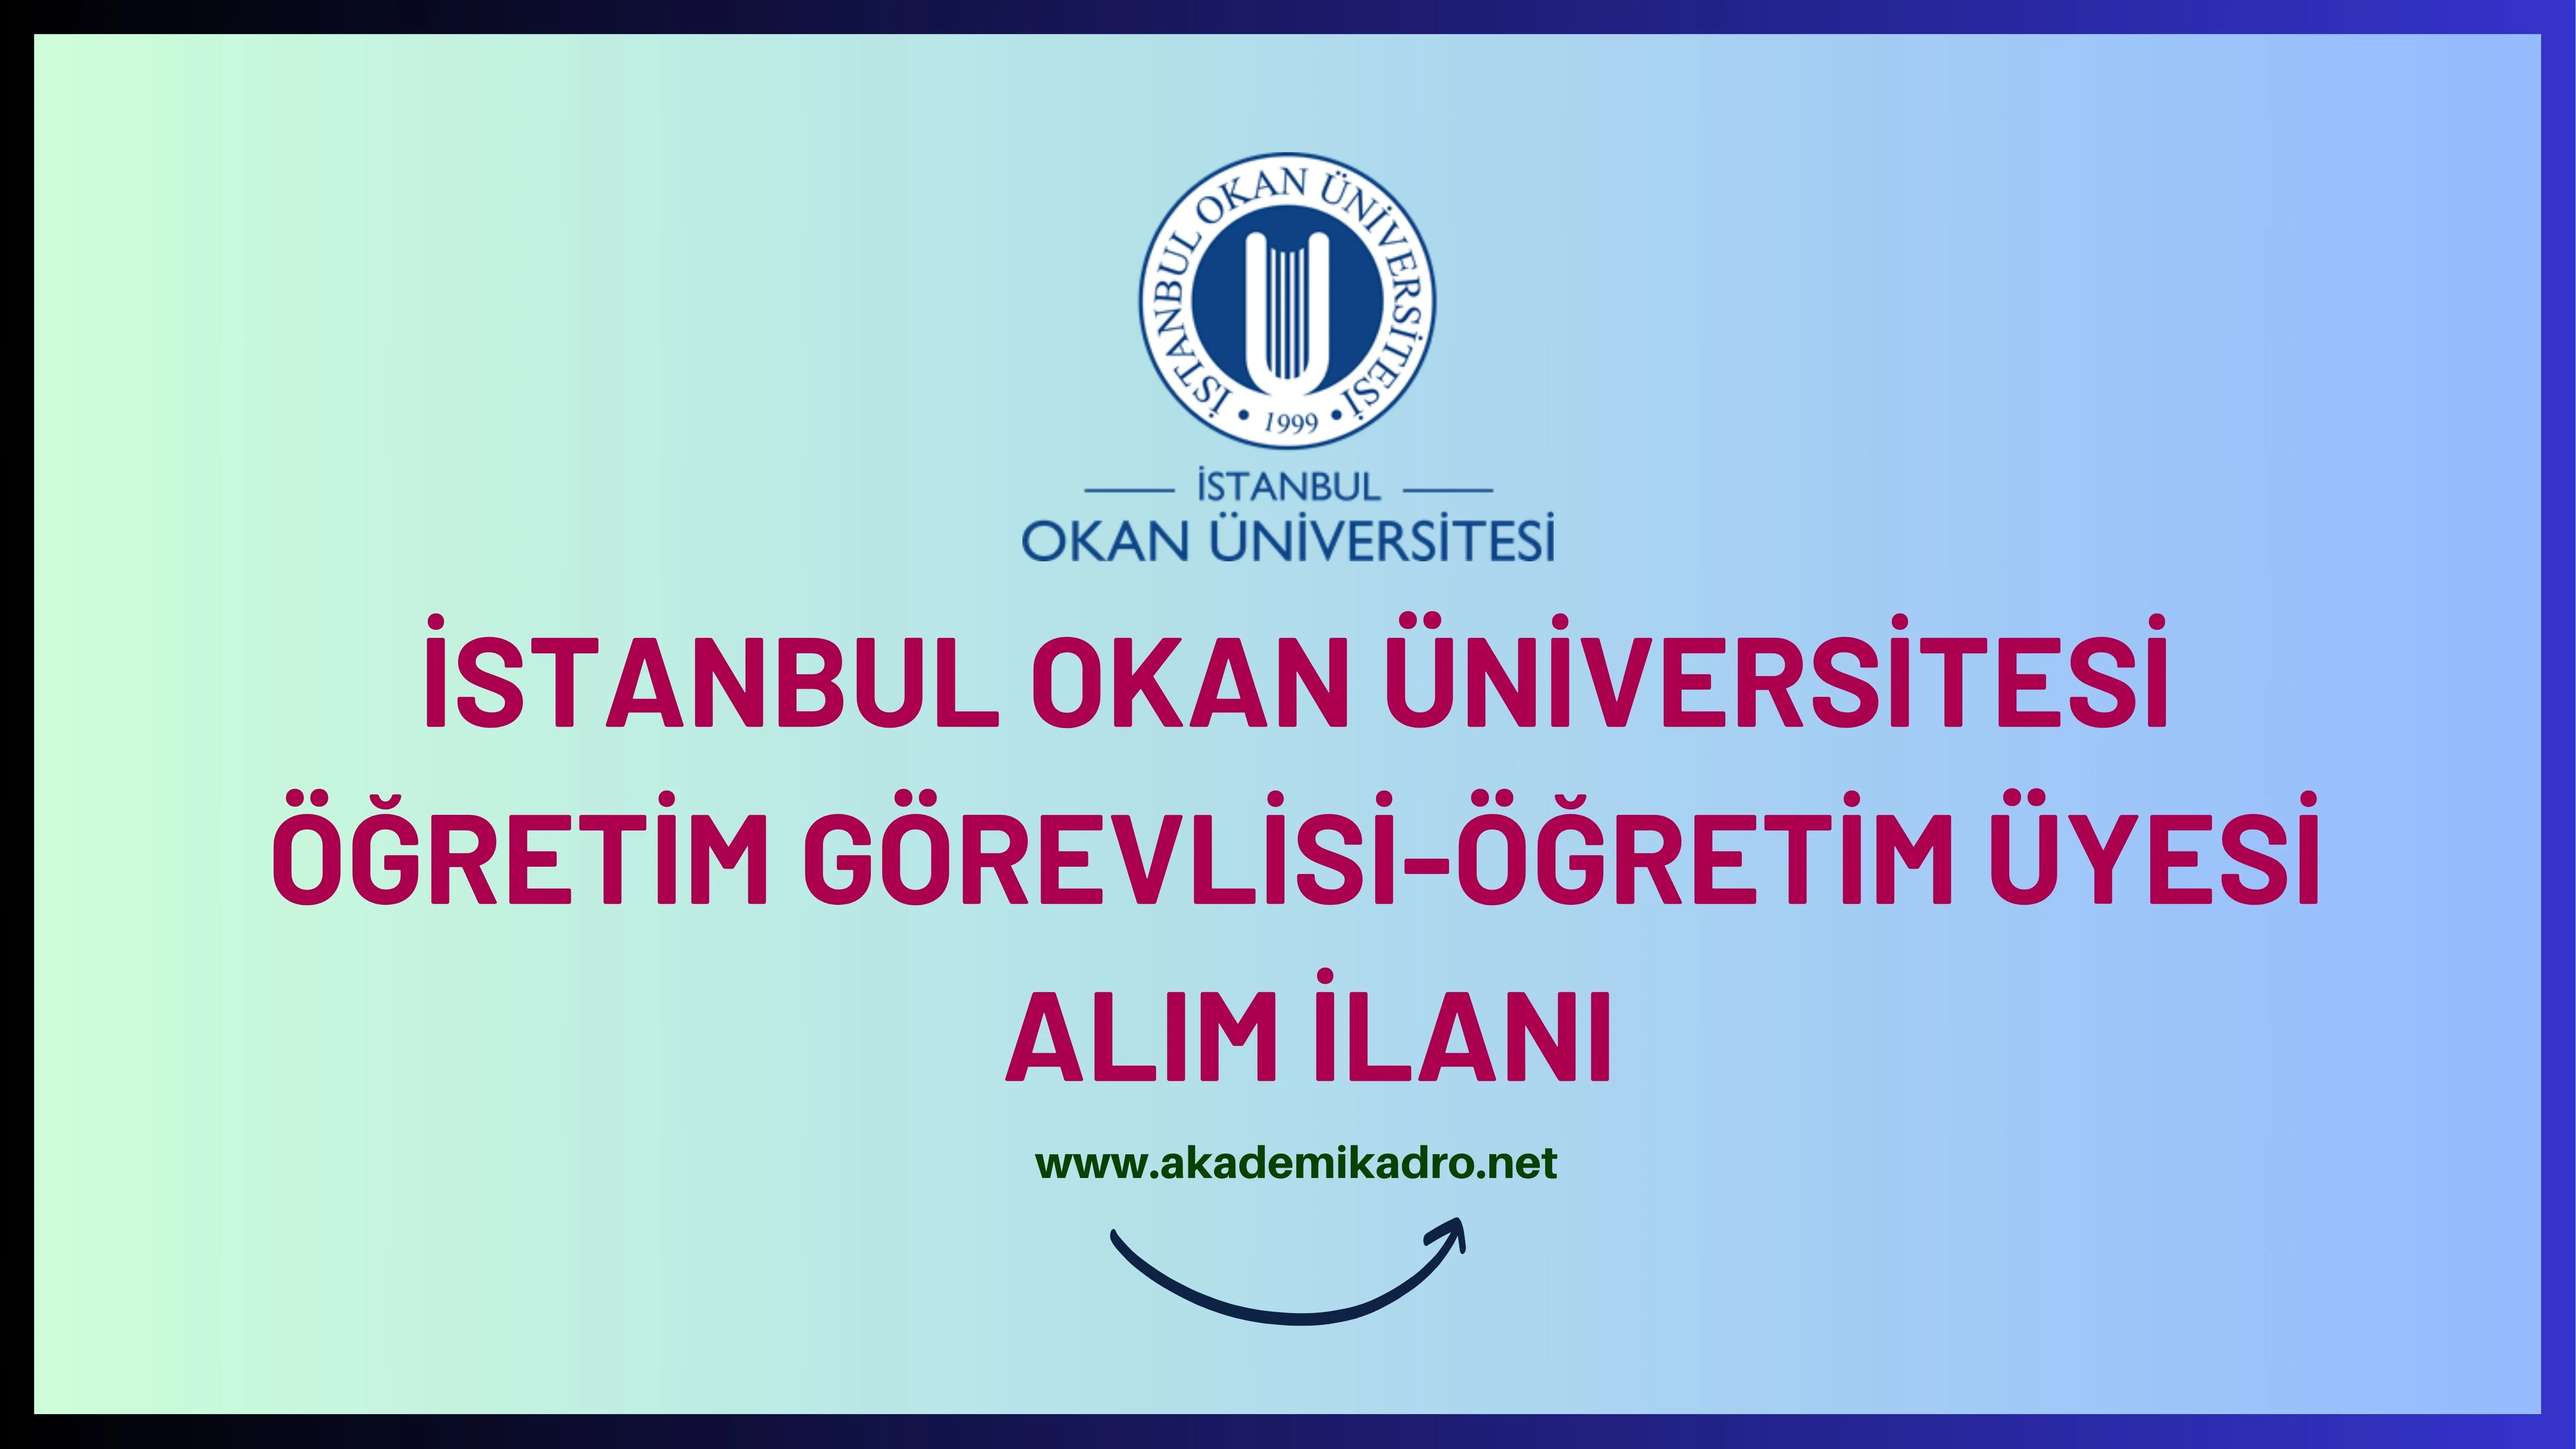 İstanbul Okan Üniversitesi 49 akademik personel alacak.